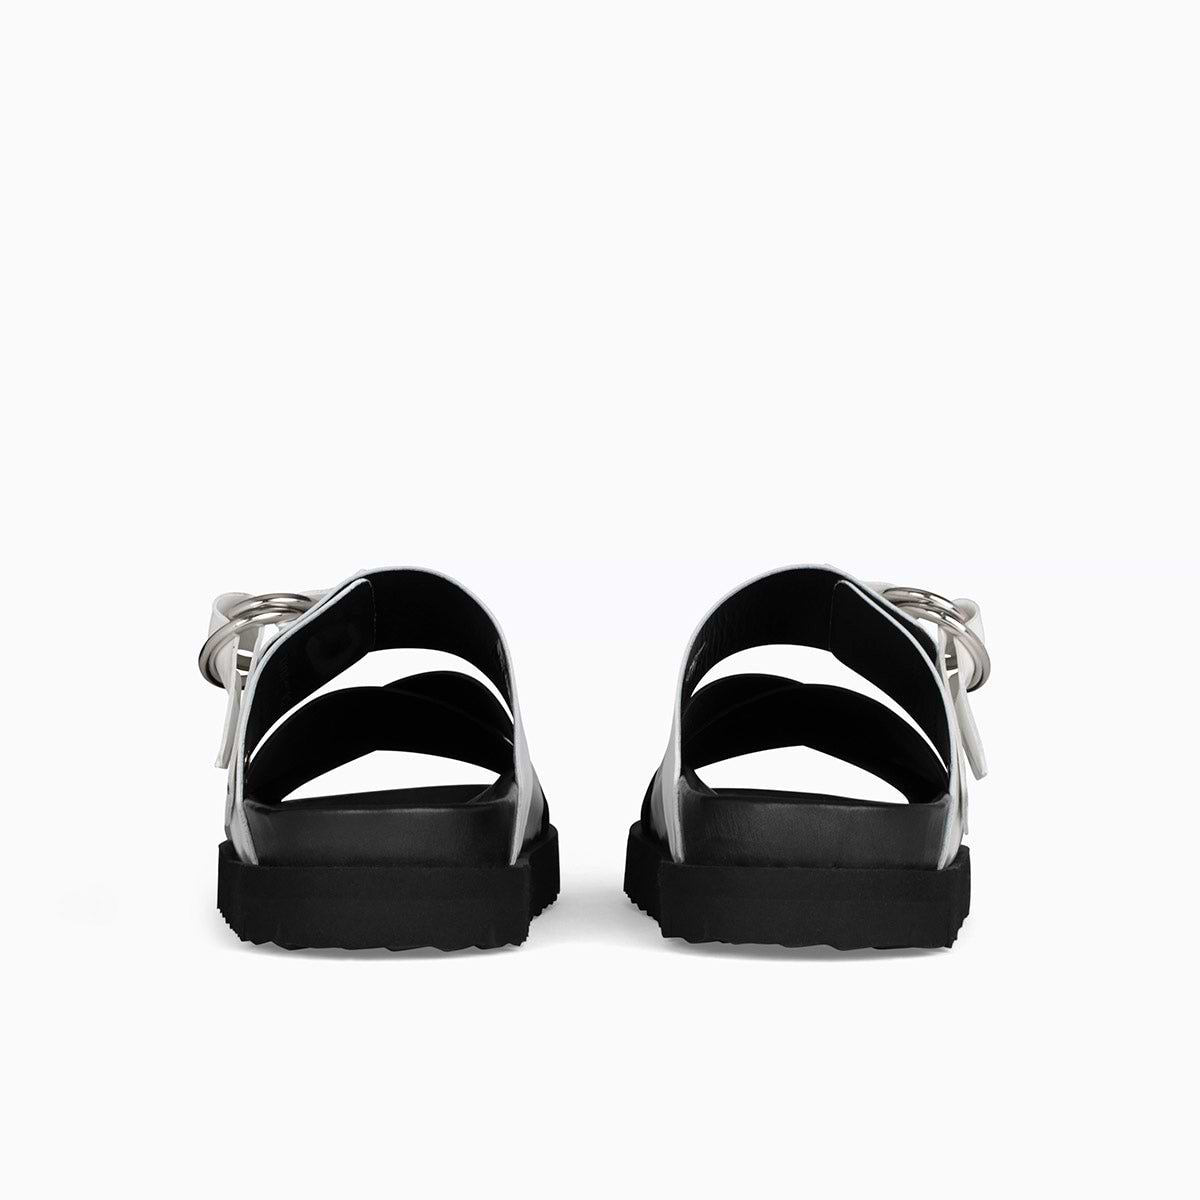 CROSS RIDER women's flat sandals in black glazed leather — PIERRE 